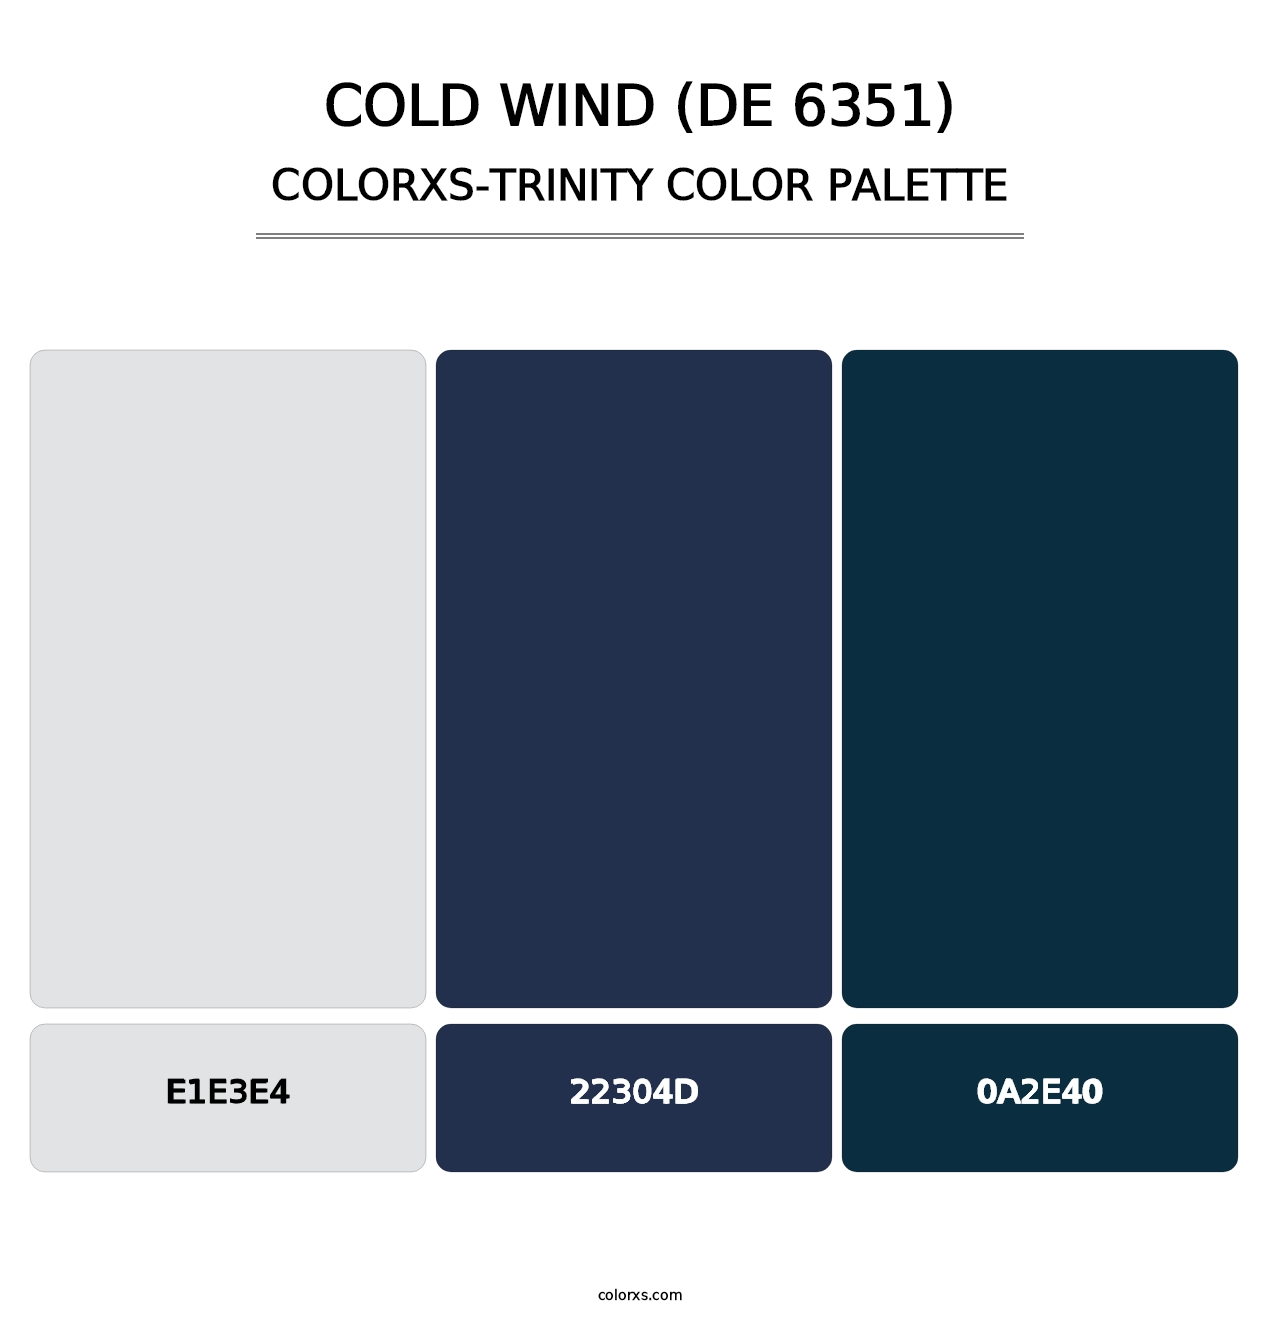 Cold Wind (DE 6351) - Colorxs Trinity Palette